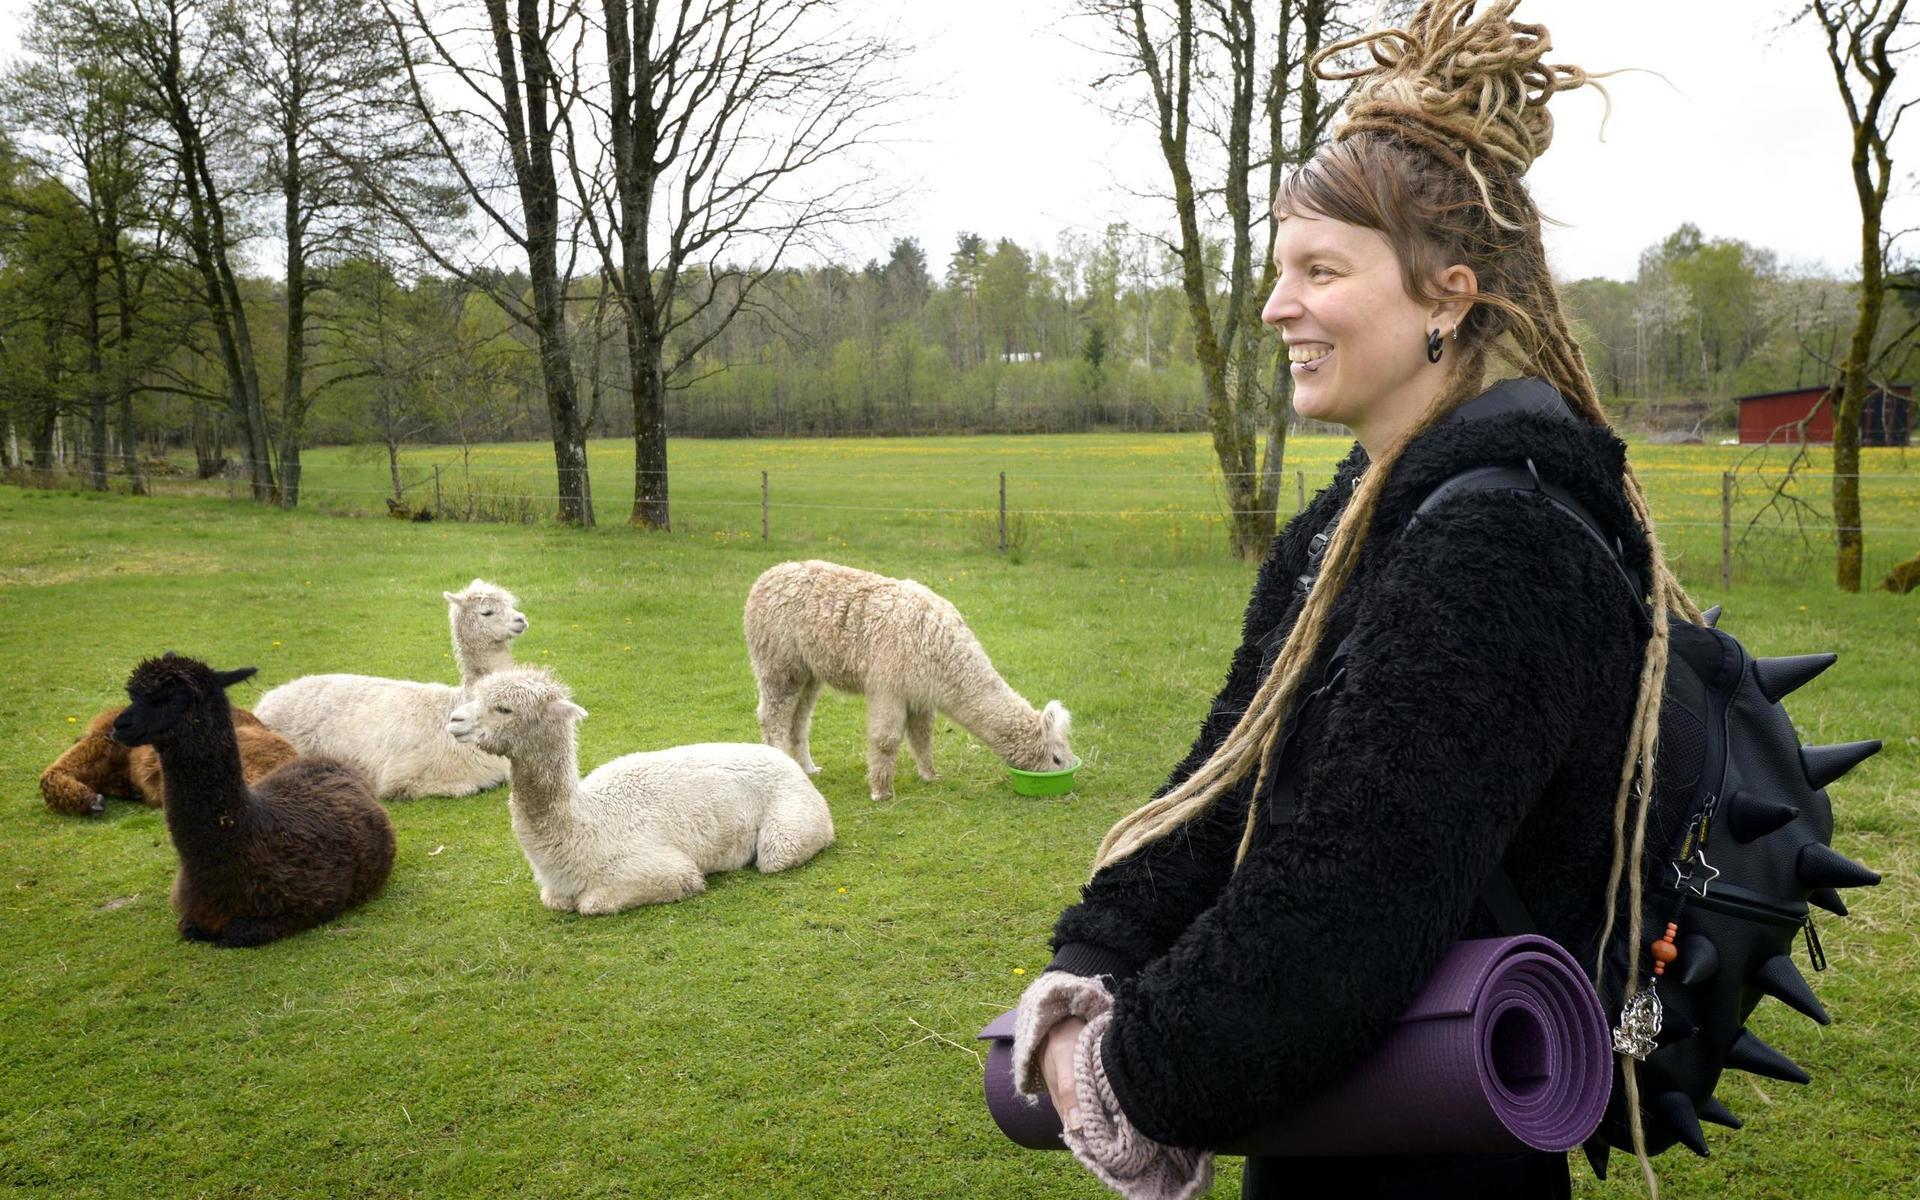 Yogainstruktör Lina Bäcklin har hållit i ett par yogapass utomhus tidigare, men aldrig i en alpackahage: ”Det är härligt att få kontakt med gräset istället för ett golv, och att få kolla upp i himlen istället för en takfläkt”.